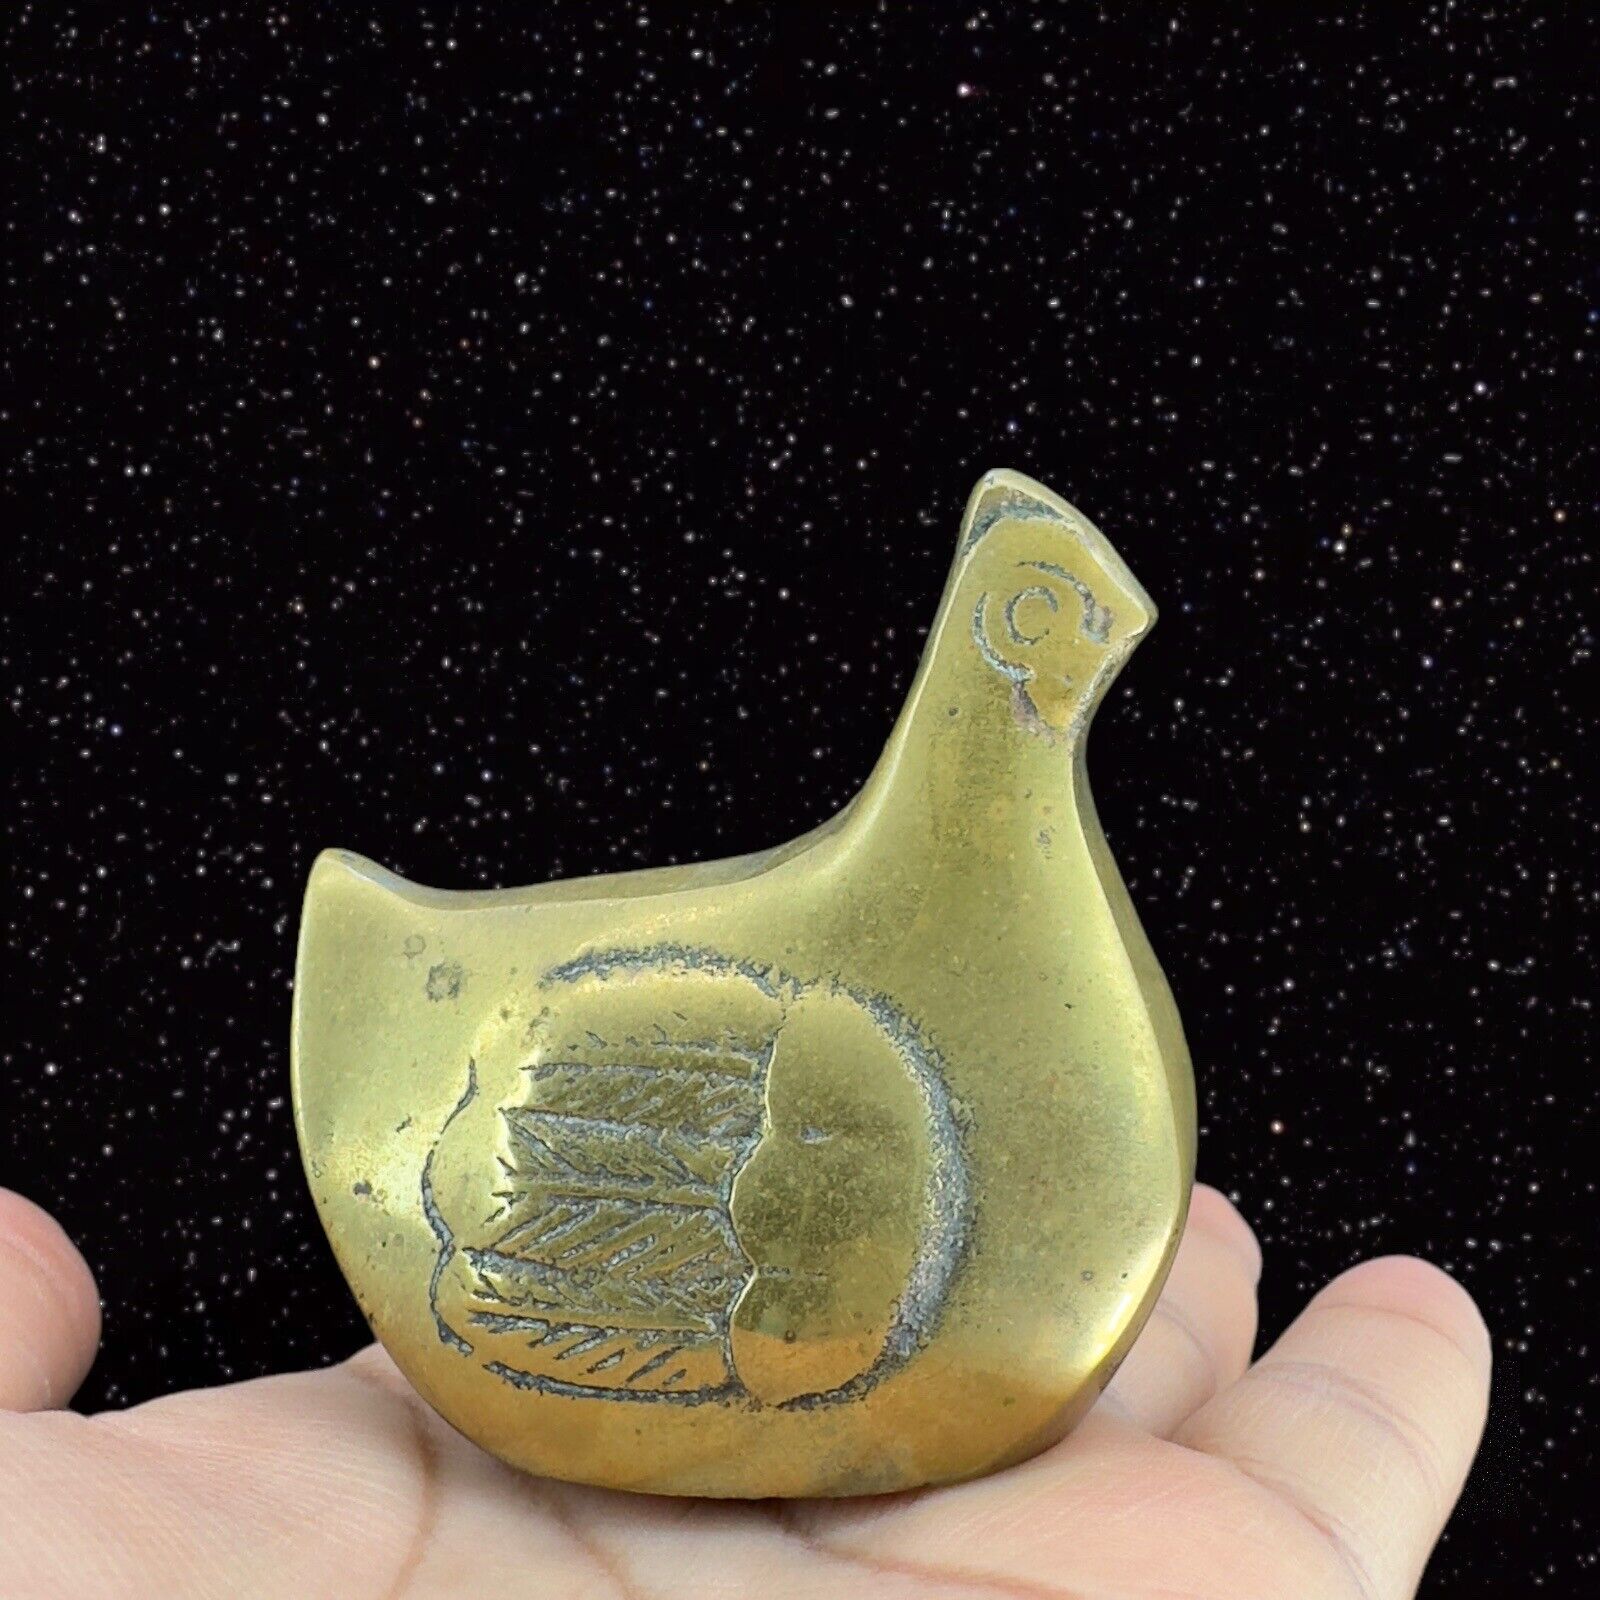 1980s Vintage Metal Brass Figurine Heavy Paperweight Hand Made In Korea Chicken